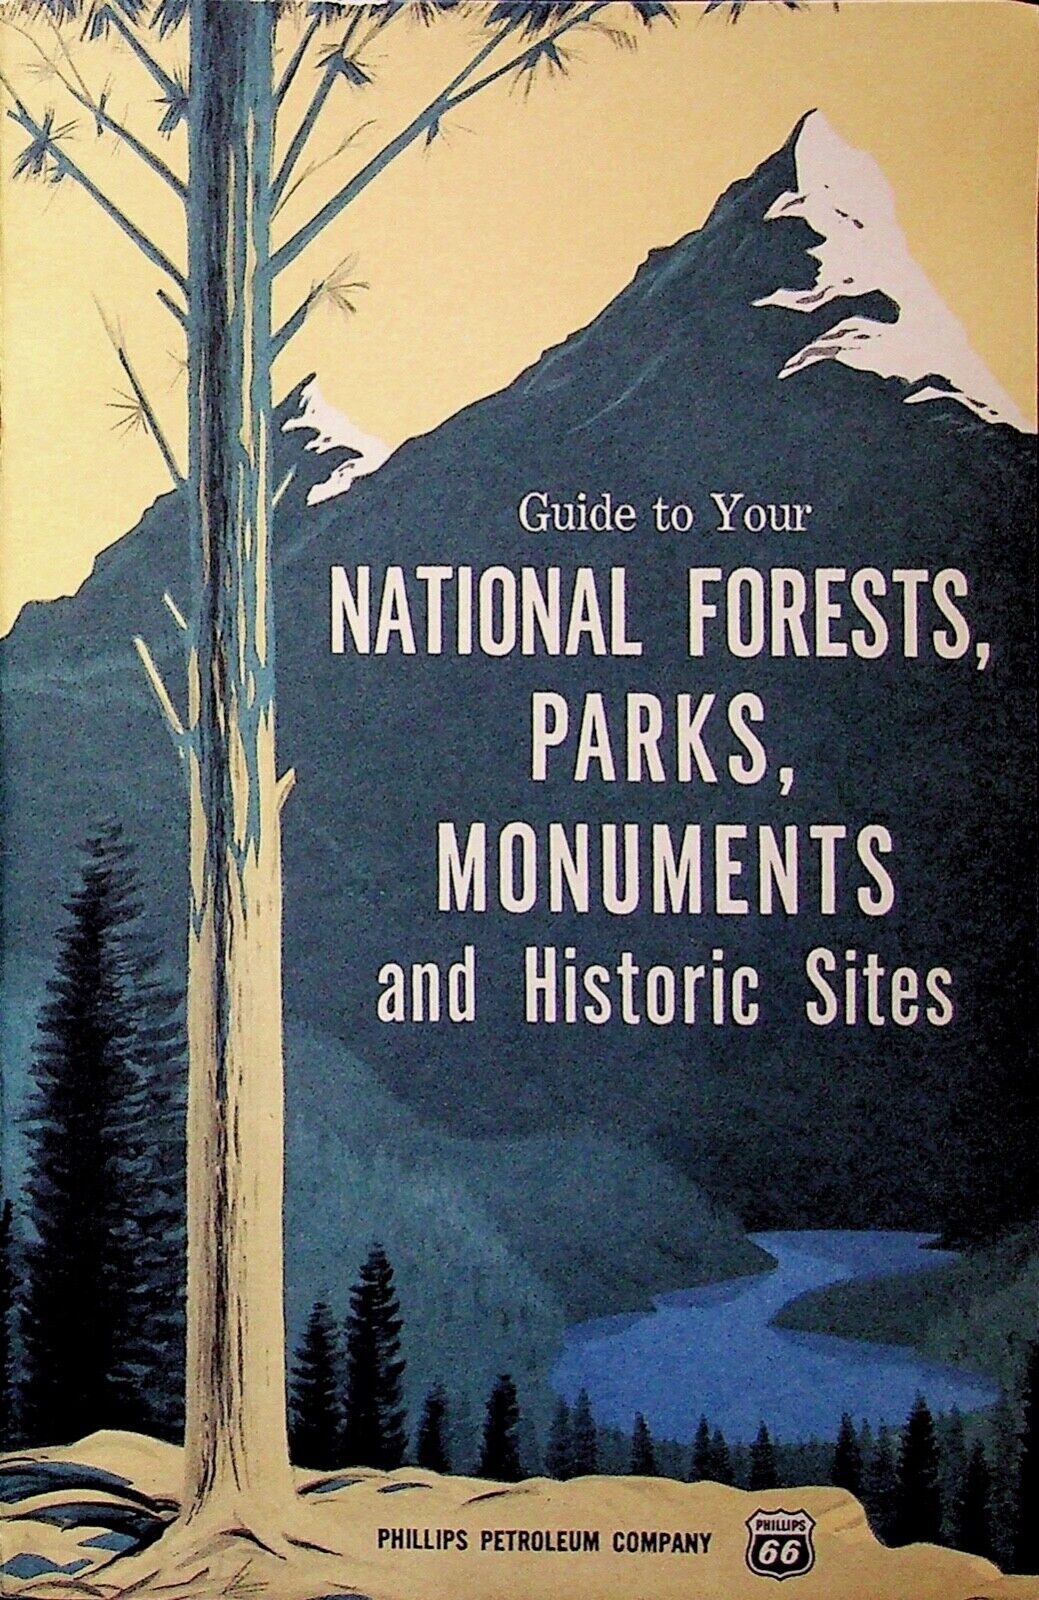 VINTAGE GUIDE TO YOUR NATIONAL FORESTS PARKS PAMPHLET PHILLIPS EPHEMERA 1962 VTG